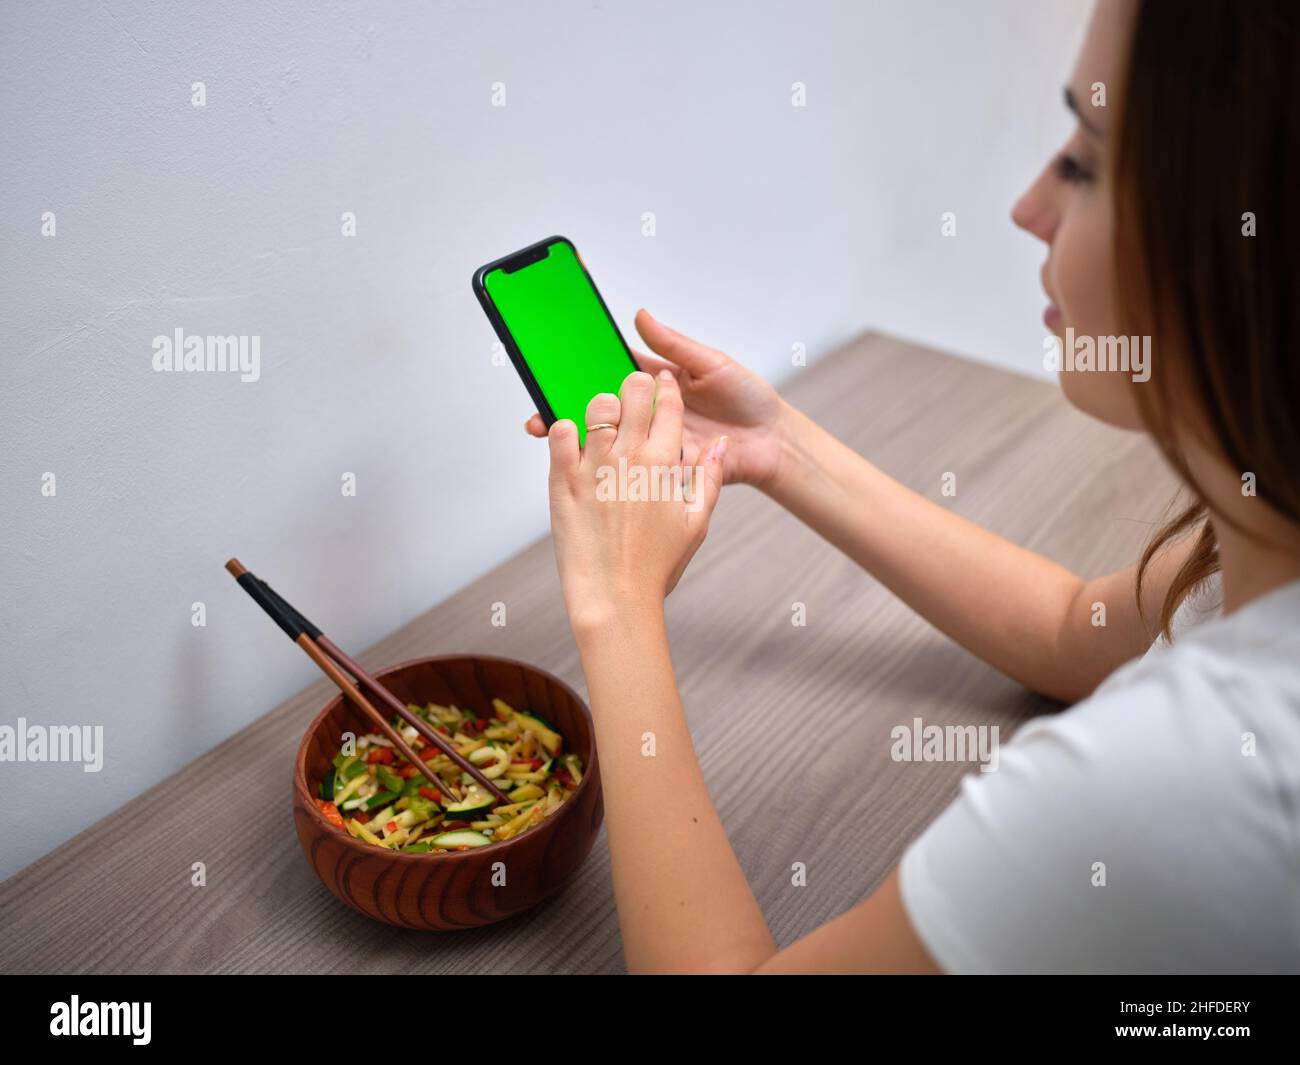 Frau, die am Tisch sitzt und auf den grünen Bildschirm ihres Mobiltelefons schaut Stockfoto